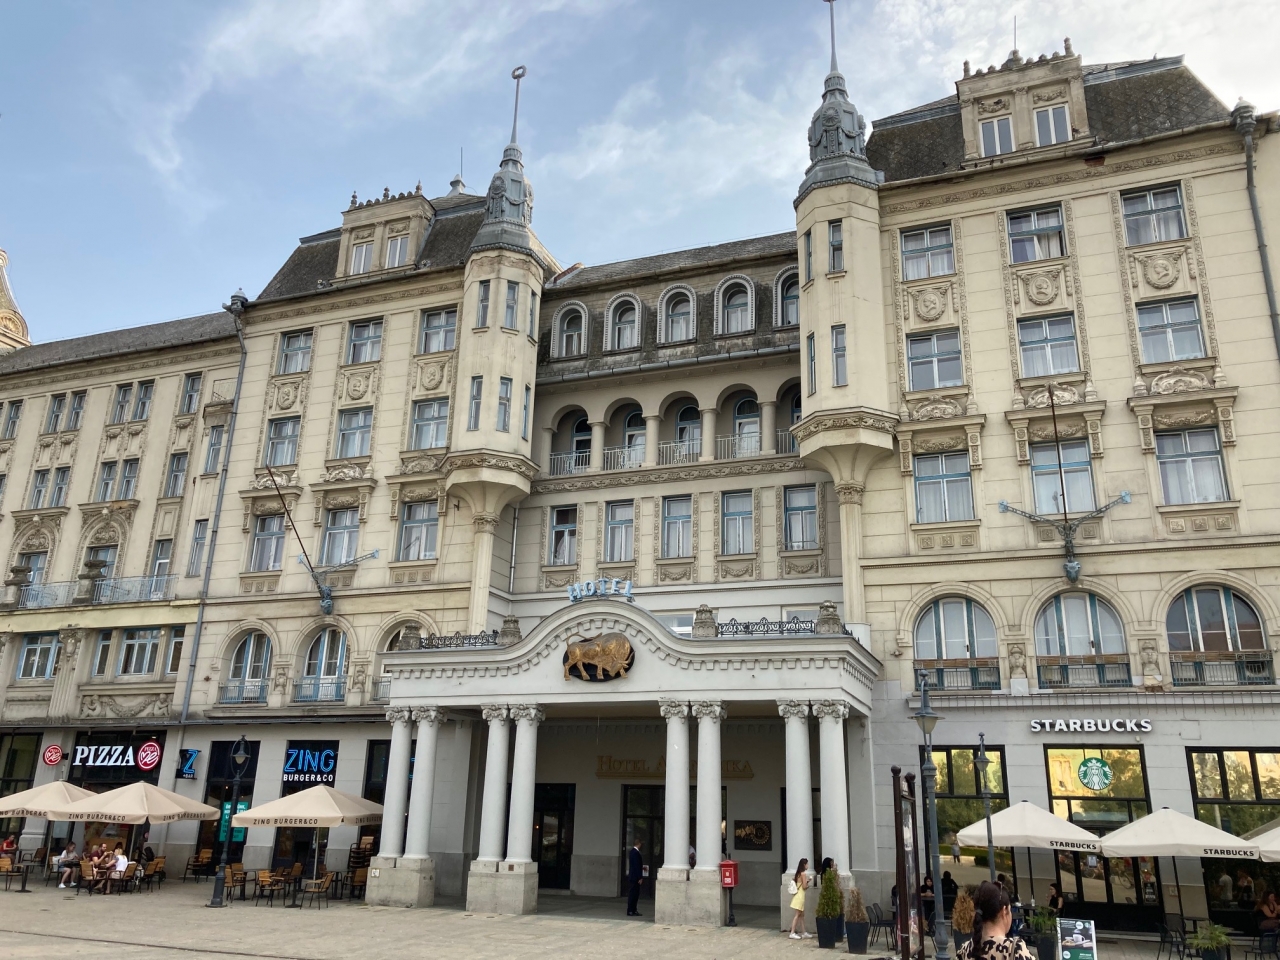 Die Veranstaltung fand im Debrecener Hotel Aranybika (Goldener Bulle) statt, das zugleich der Sitz des MCC in Debrecen ist. 